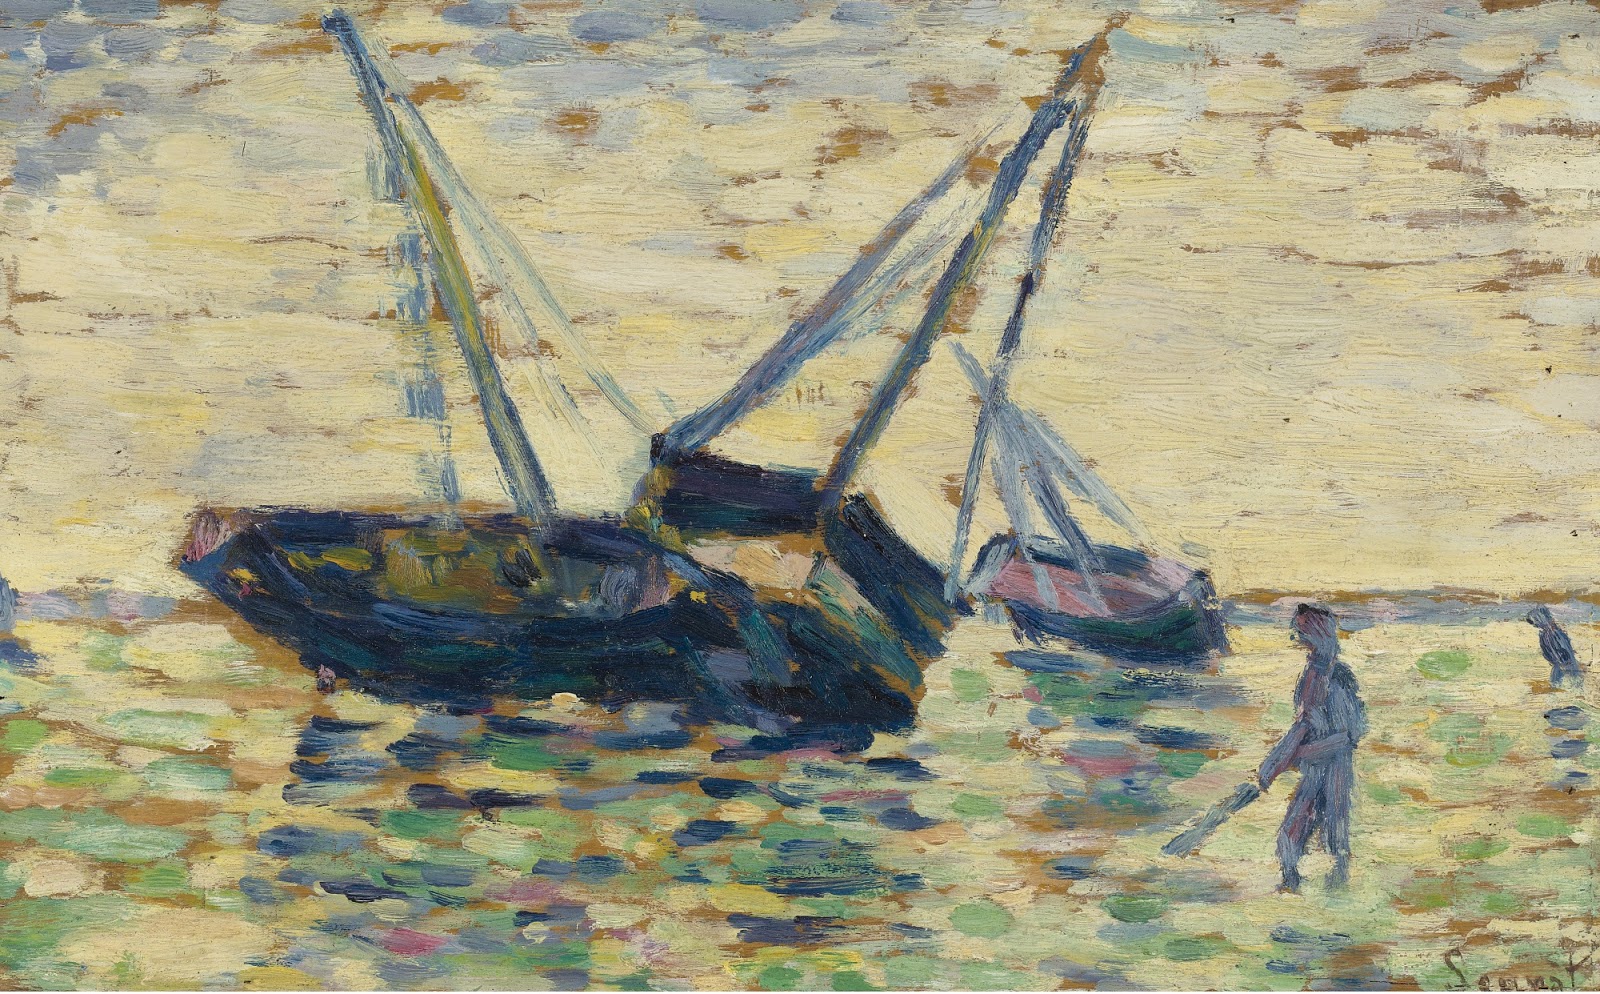 Georges+Seurat-1859-1891 (58).jpg